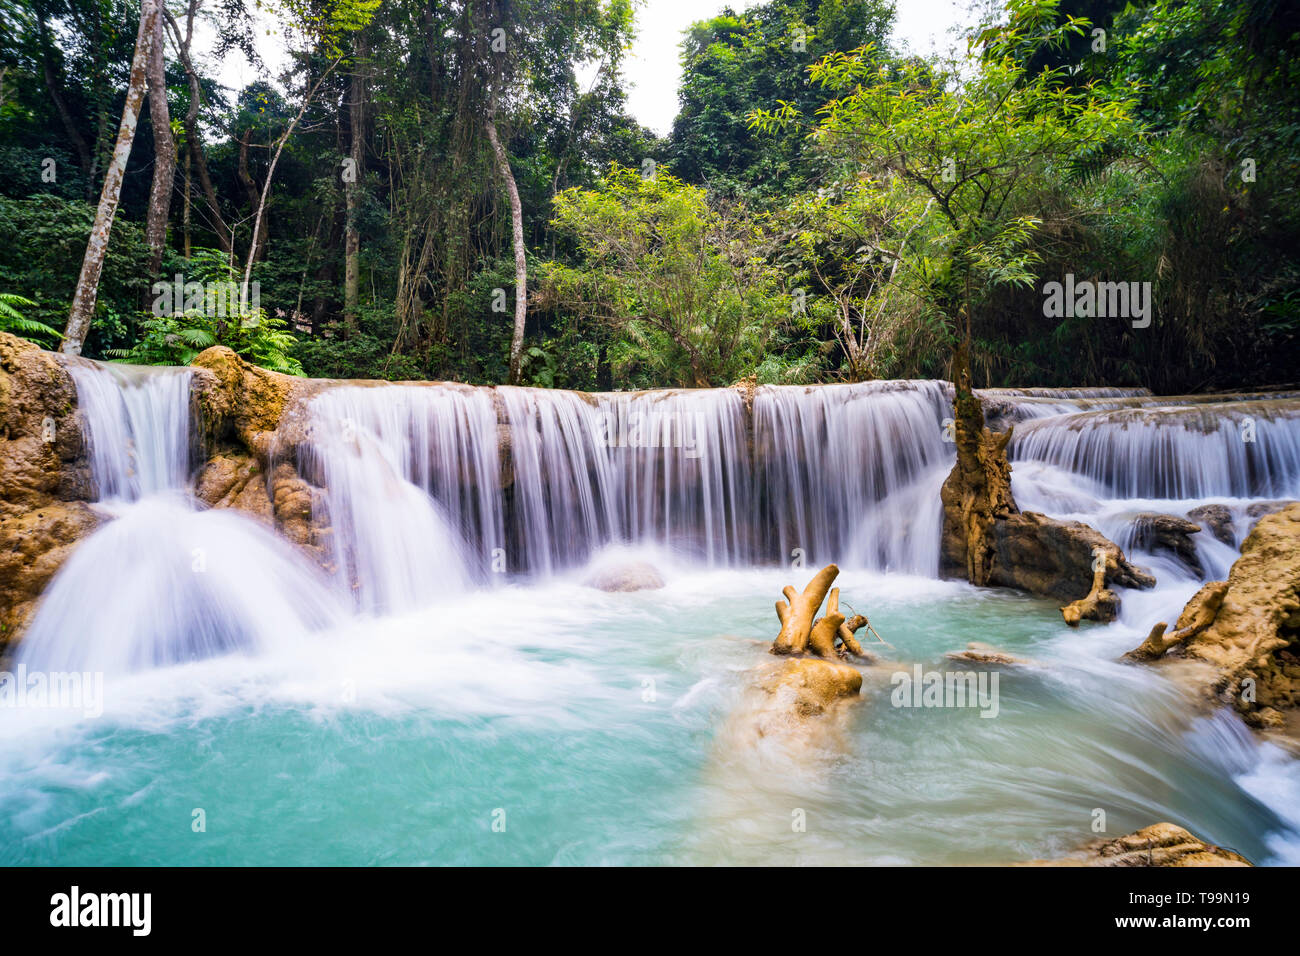 La cascada y pequeño estanque fresco con agua de color turquesa. Concepto de turismo ecológico. Fantásticamente hermosa naturaleza con agua clara y salvajes bosques Foto de stock